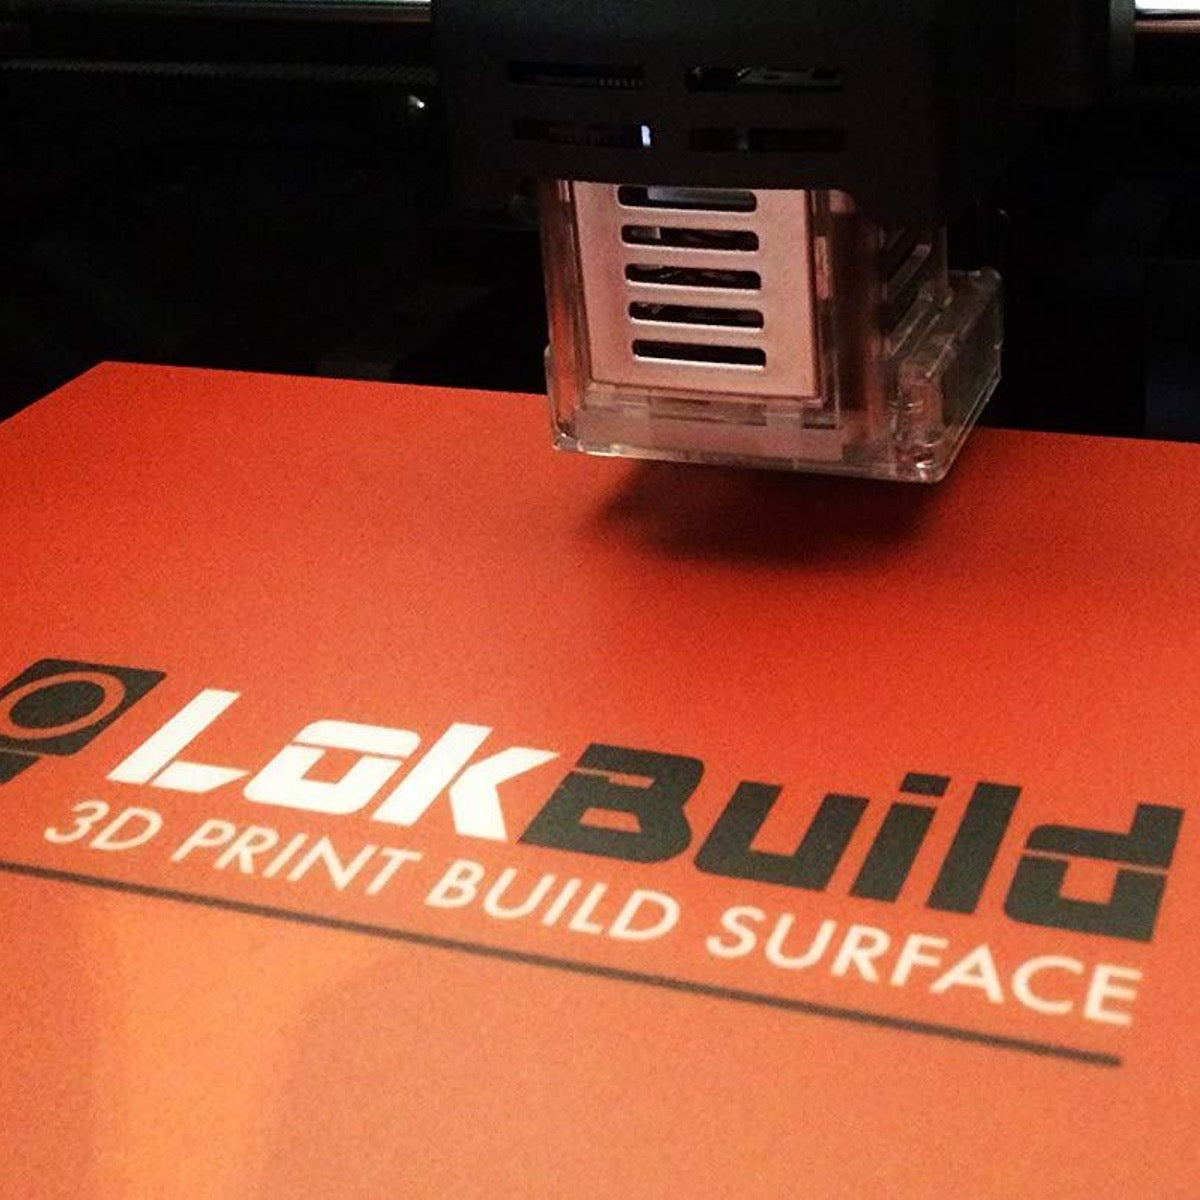 LokBuild 3D Print Build Surface - 8